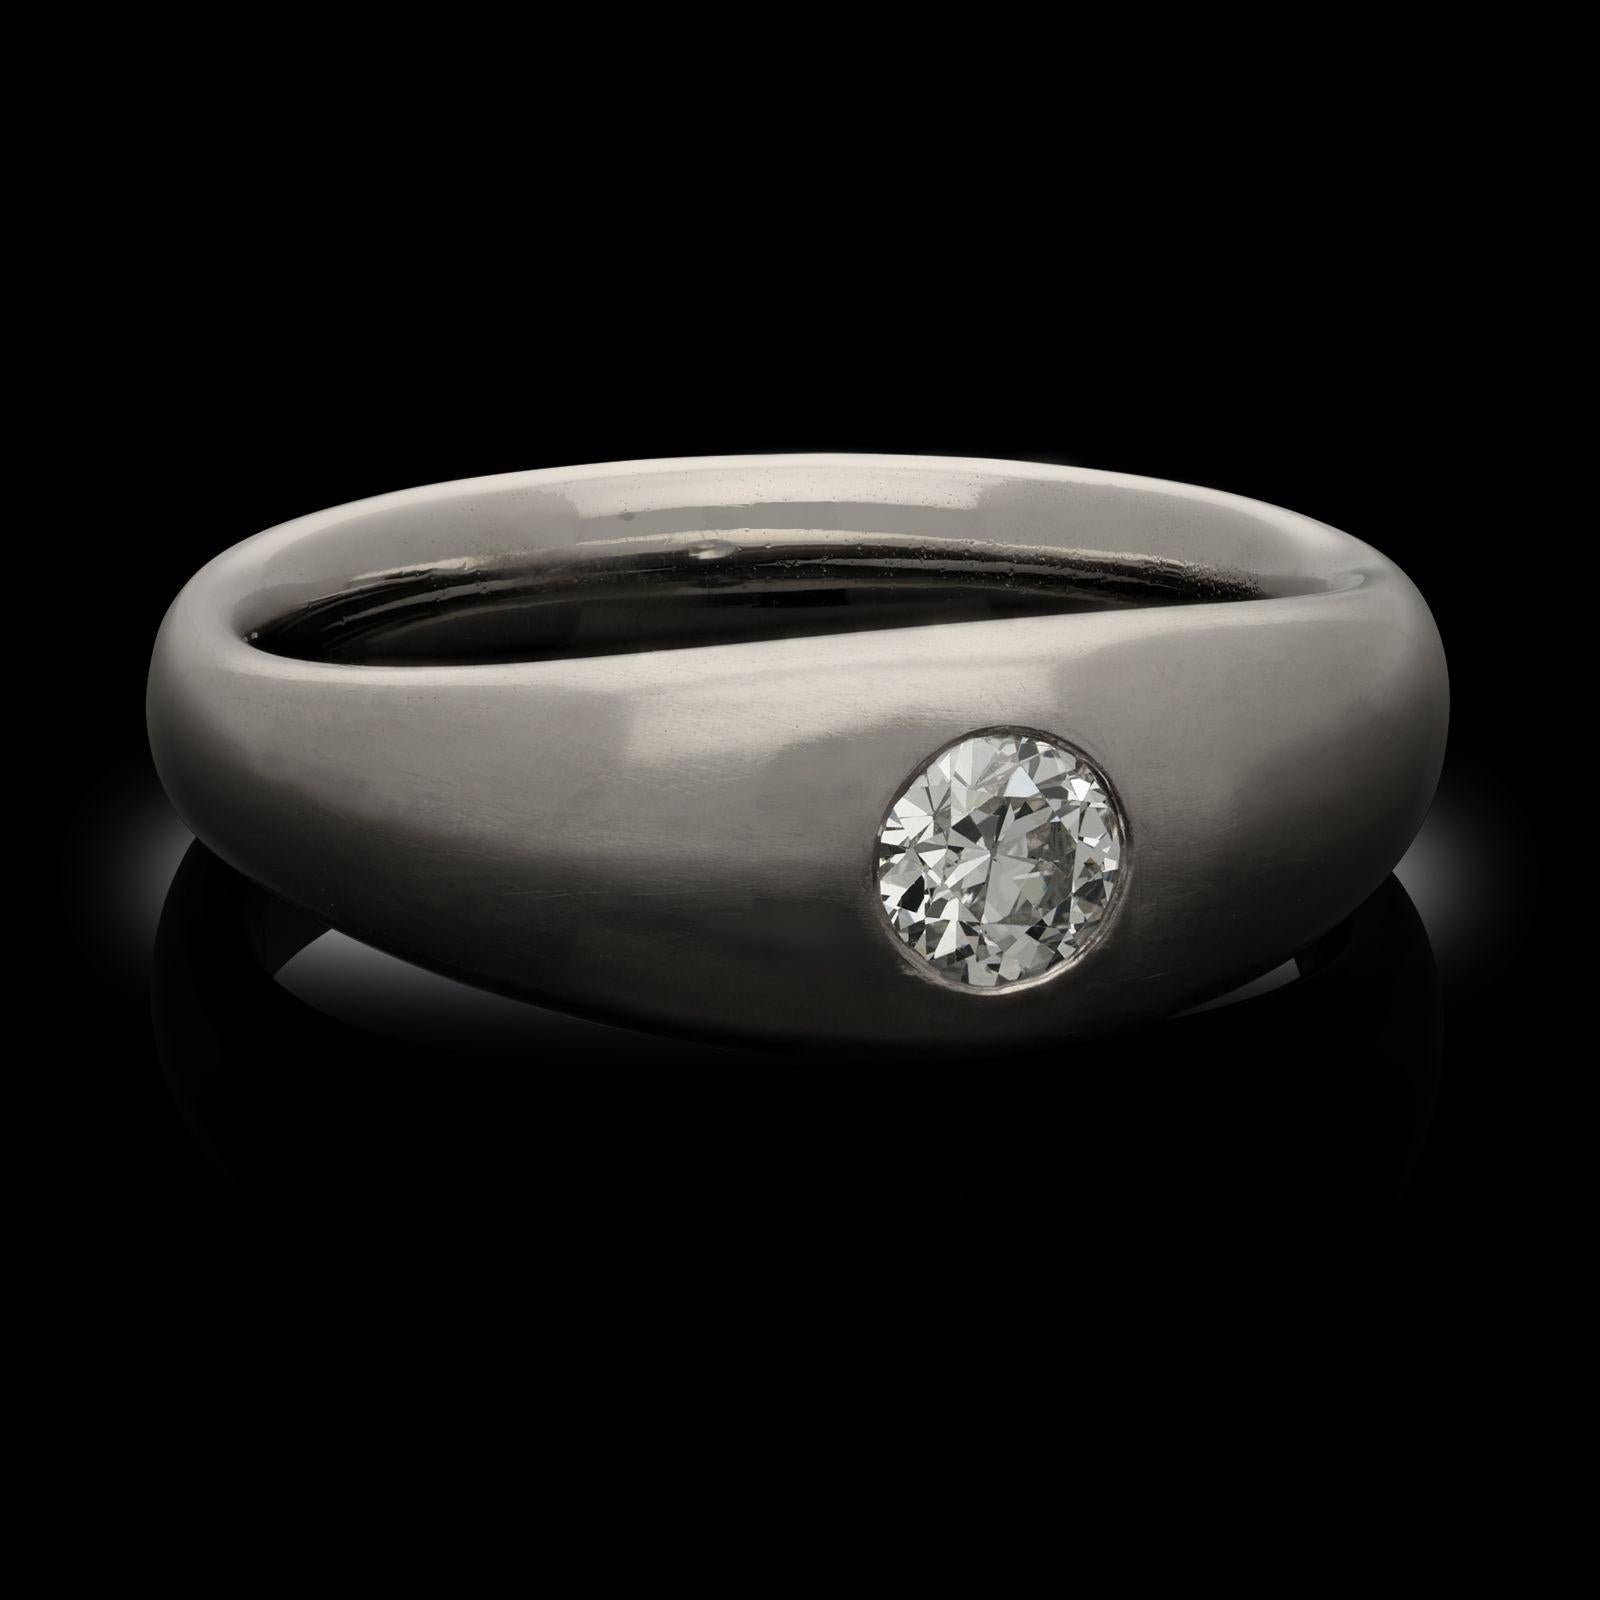 Bague sertie d'un diamant de taille ancienne et d'un anneau en platine par Hancocks. La bague est sertie au centre d'un diamant de taille européenne ancienne pesant 0,45 ct serti à fleur dans une monture de style gypsie à l'intérieur d'un anneau en